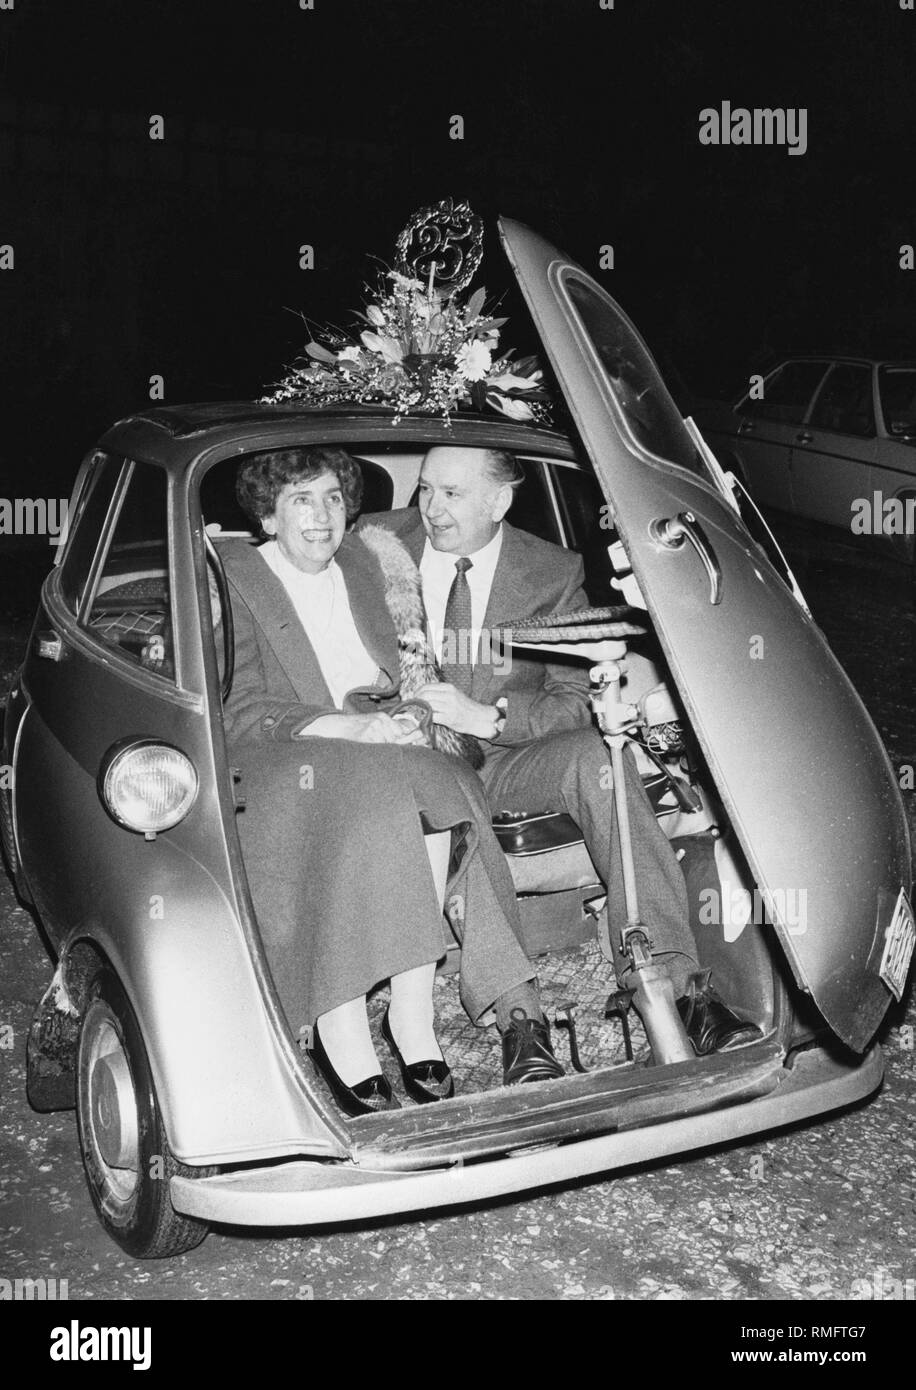 La giovane Ingrid e Erich Schaefer in una BMW Isetta. La vettura è stata un dono da parte del personale di Erich Schaefer della società degli installatori elettrici in occasione del suo XXV anniversario. Foto Stock